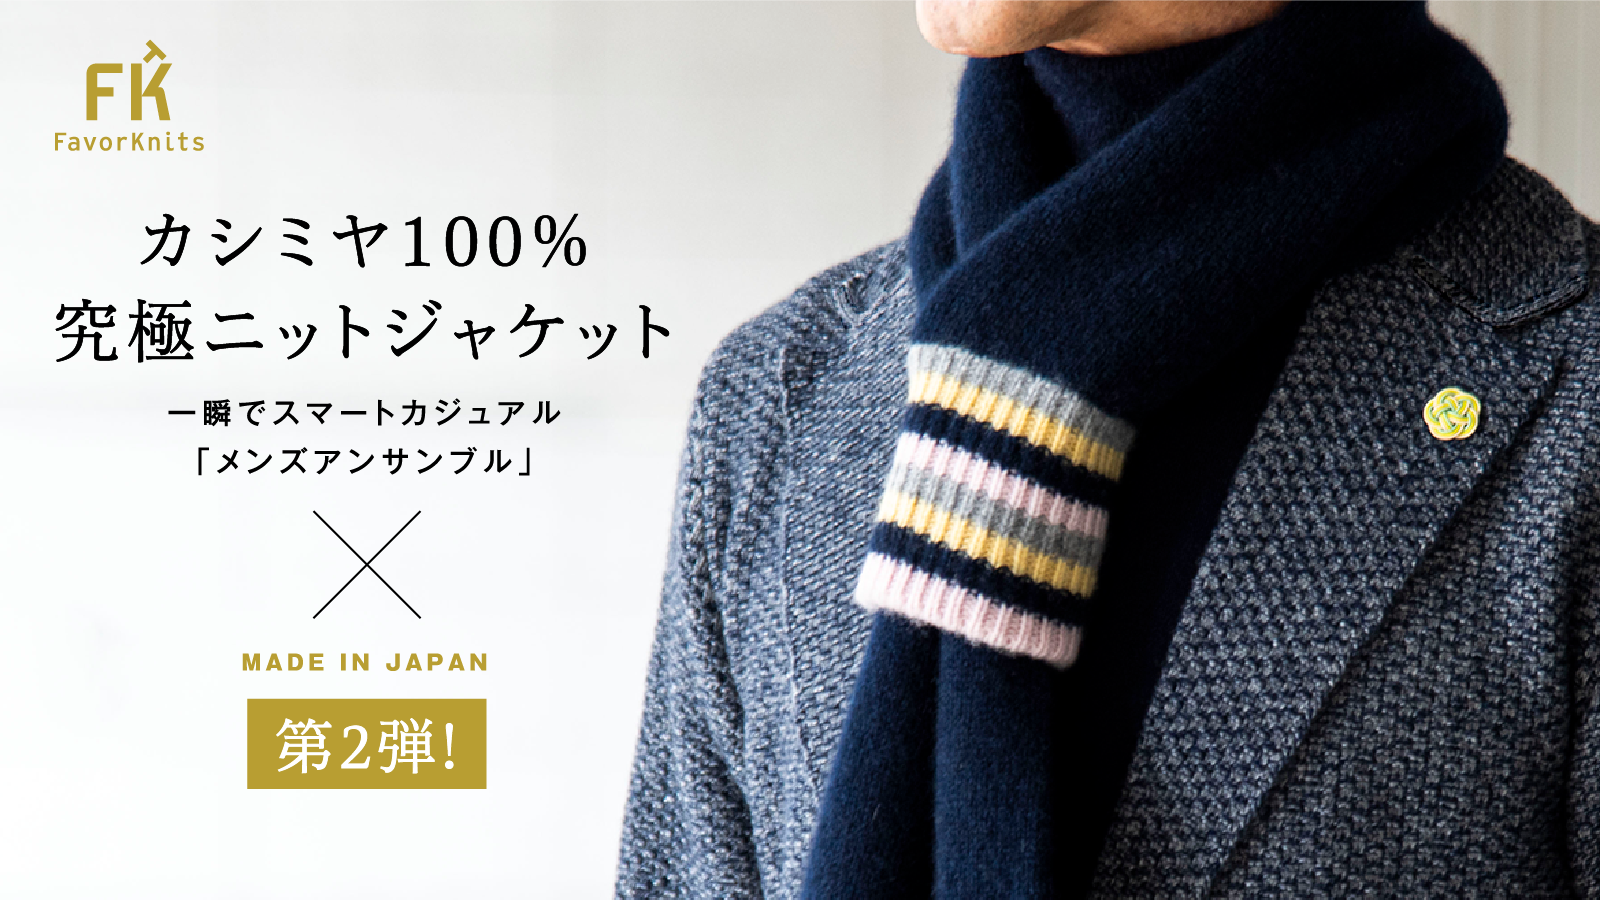 【カシミヤハニカム ニットジャケット&チューブマフラー】「Makuake」にて先行予約販売中です